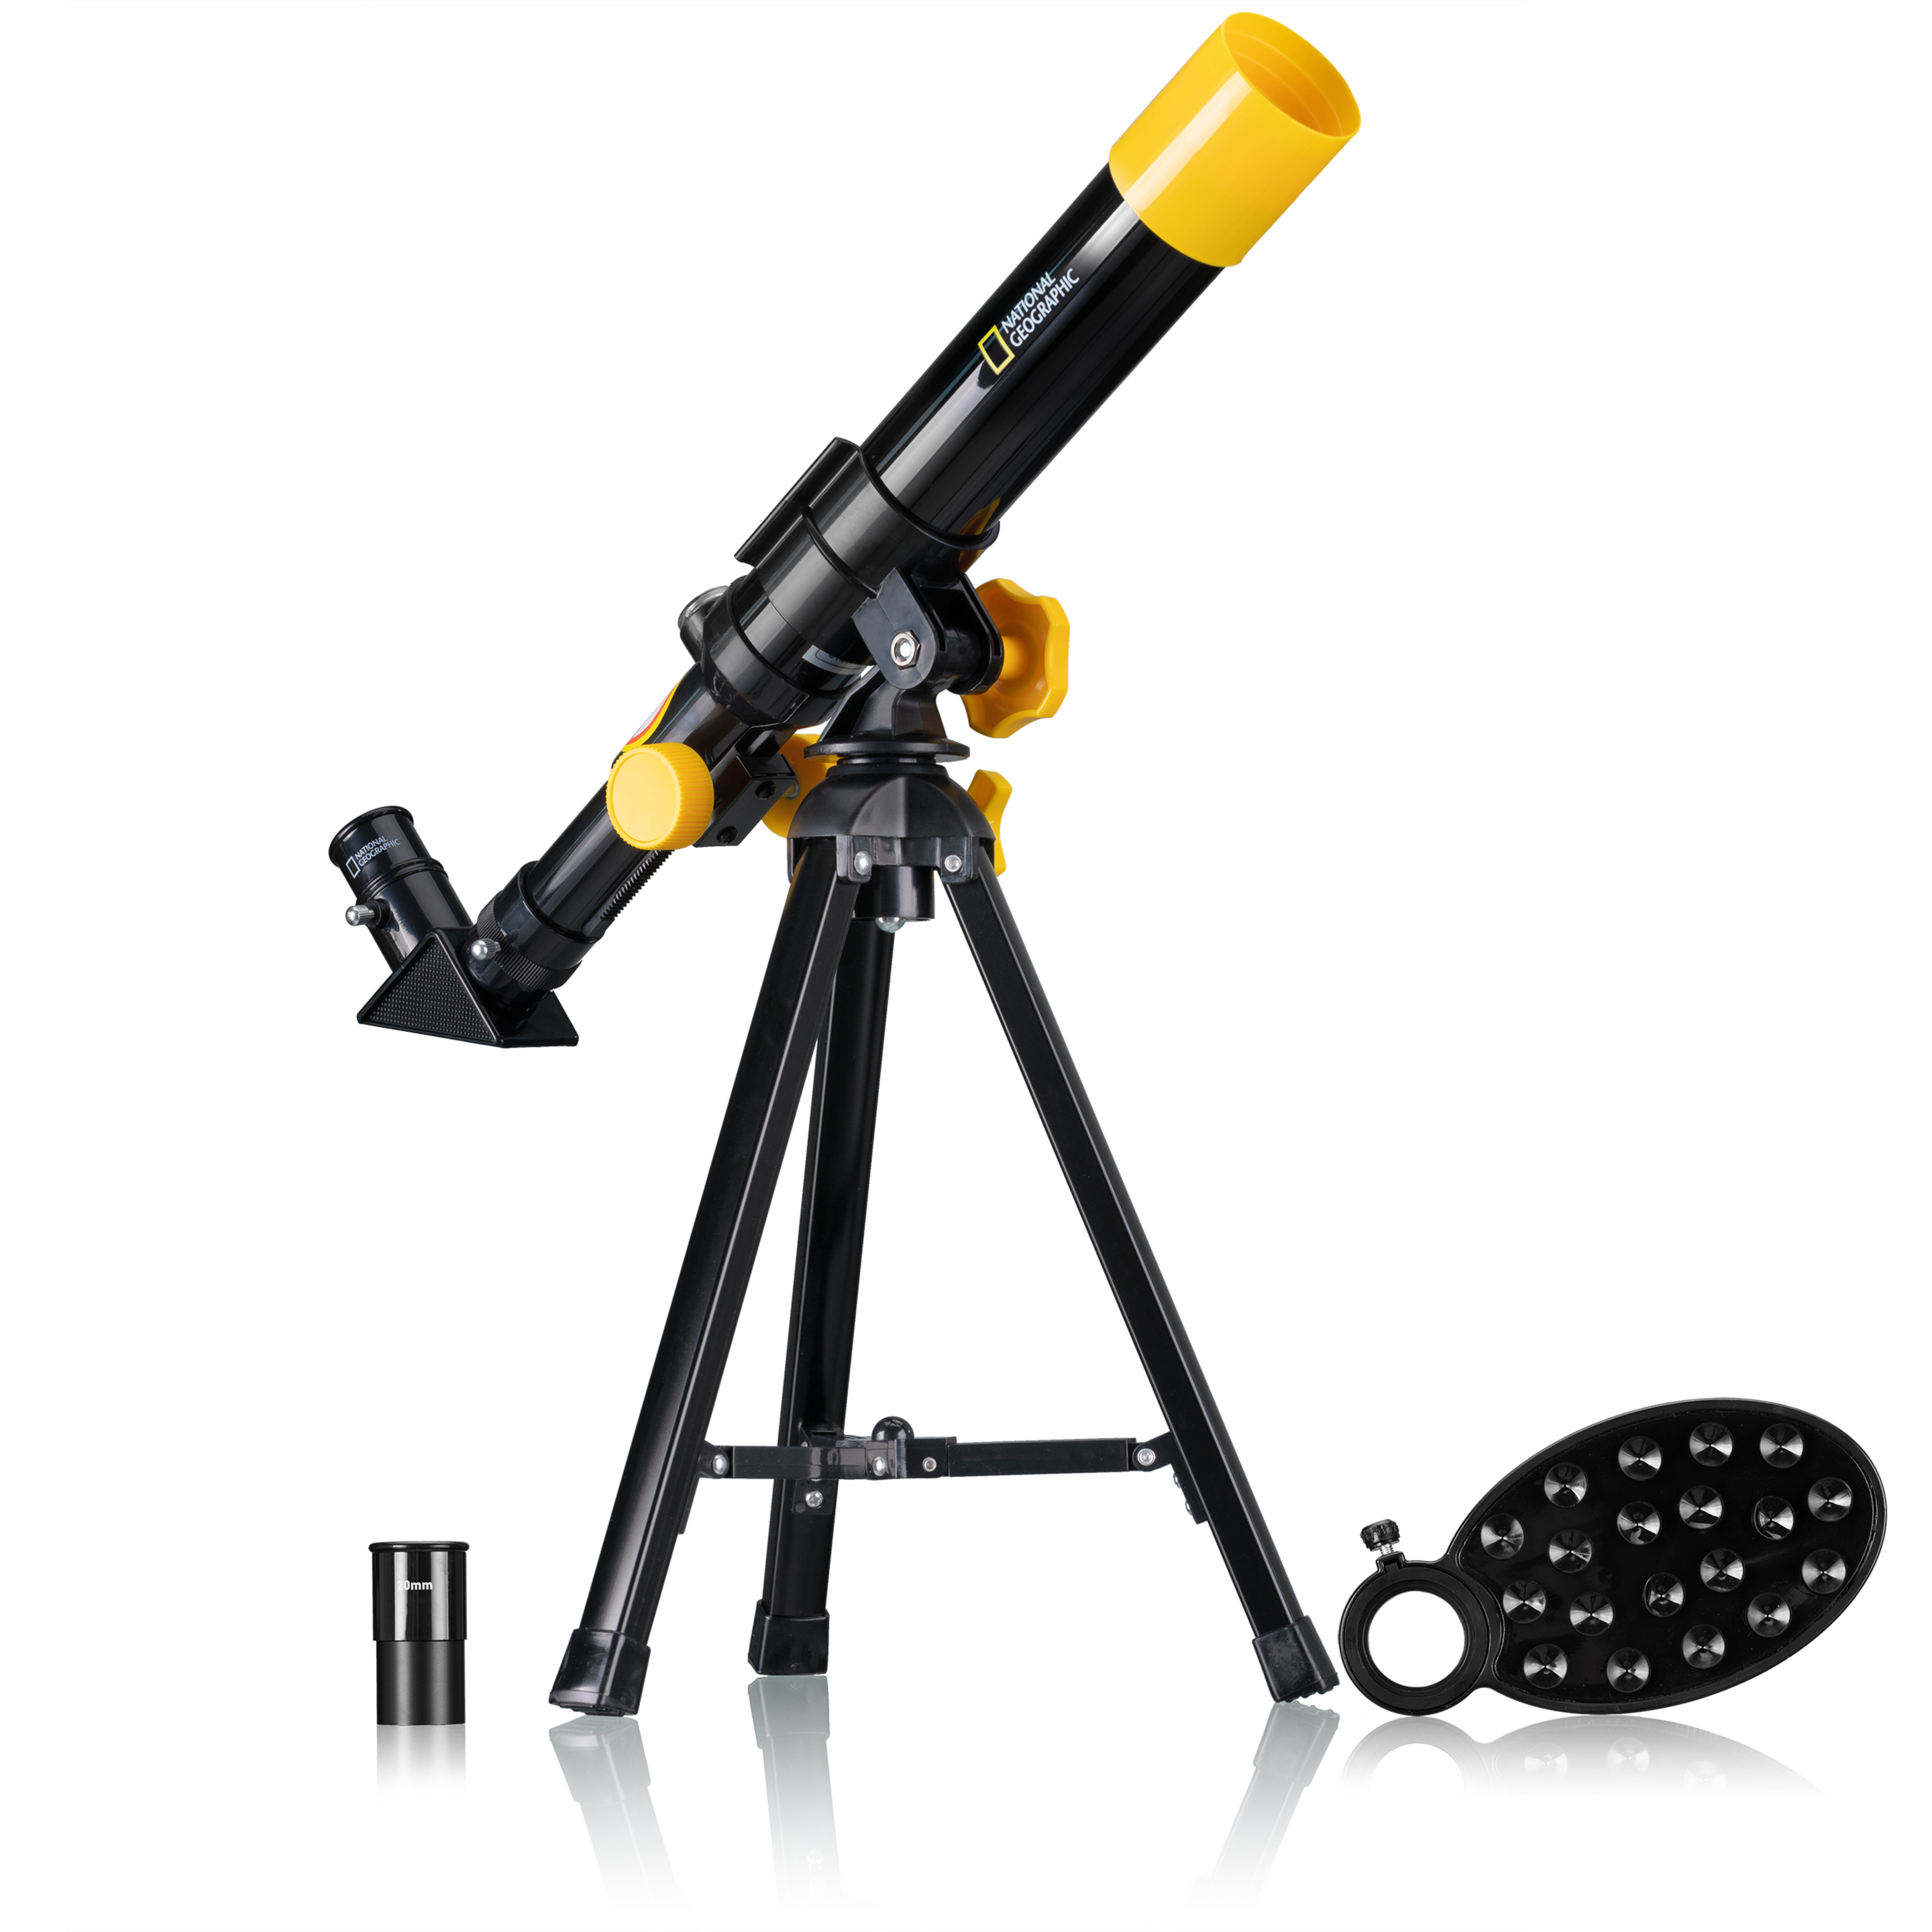 Pack Explorer De N.geographic -incluye Telescopio+prismático+detector De Metales - Negro  MKP